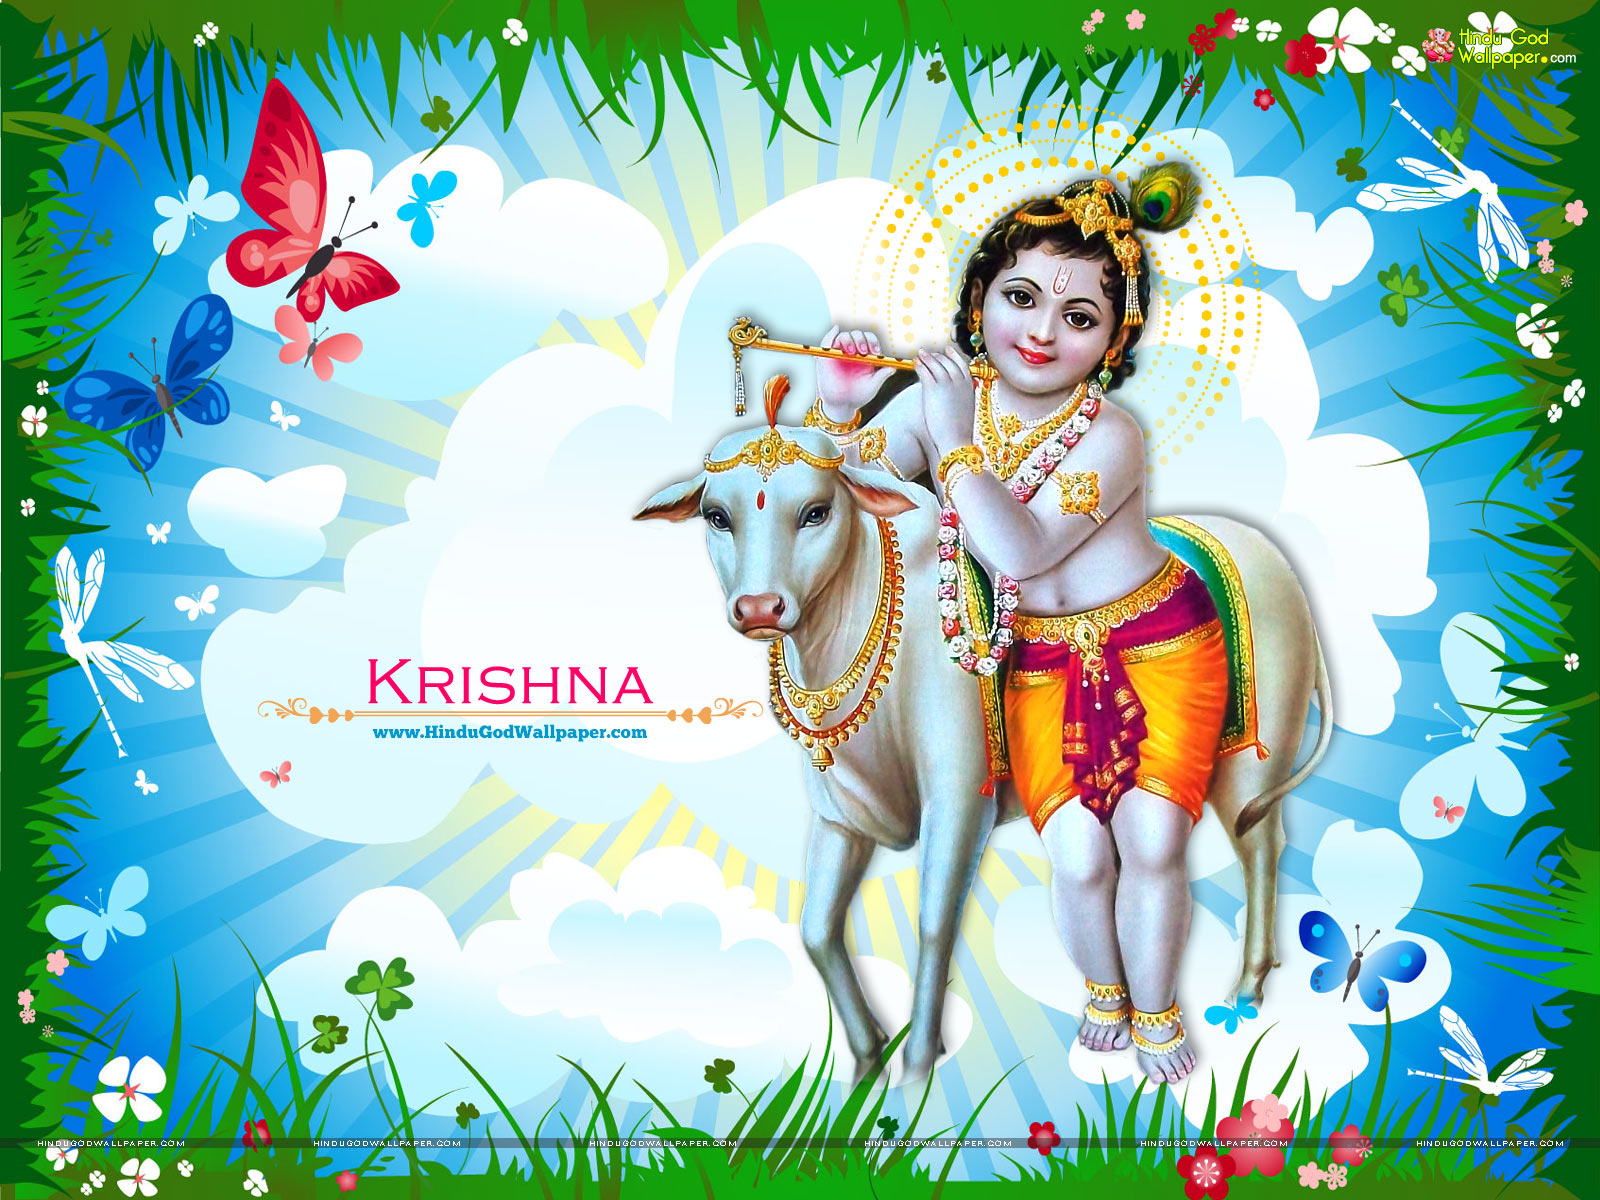 Shri Krishna - Shree Krishna Wallpaper Free Download - HD Wallpaper 